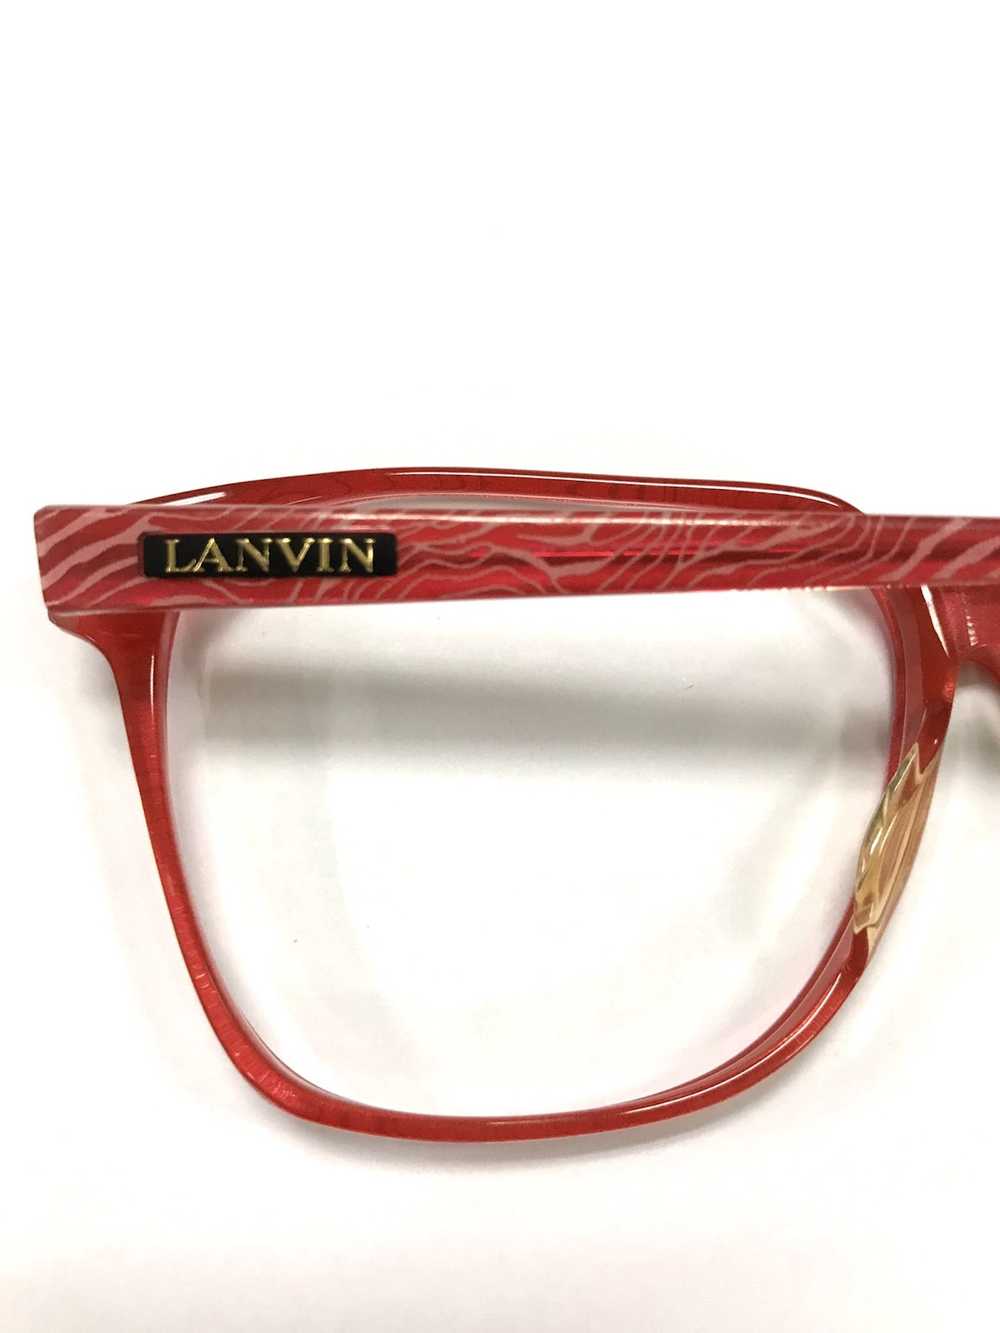 Lanvin Lanvin frame glasses x vintage - image 3